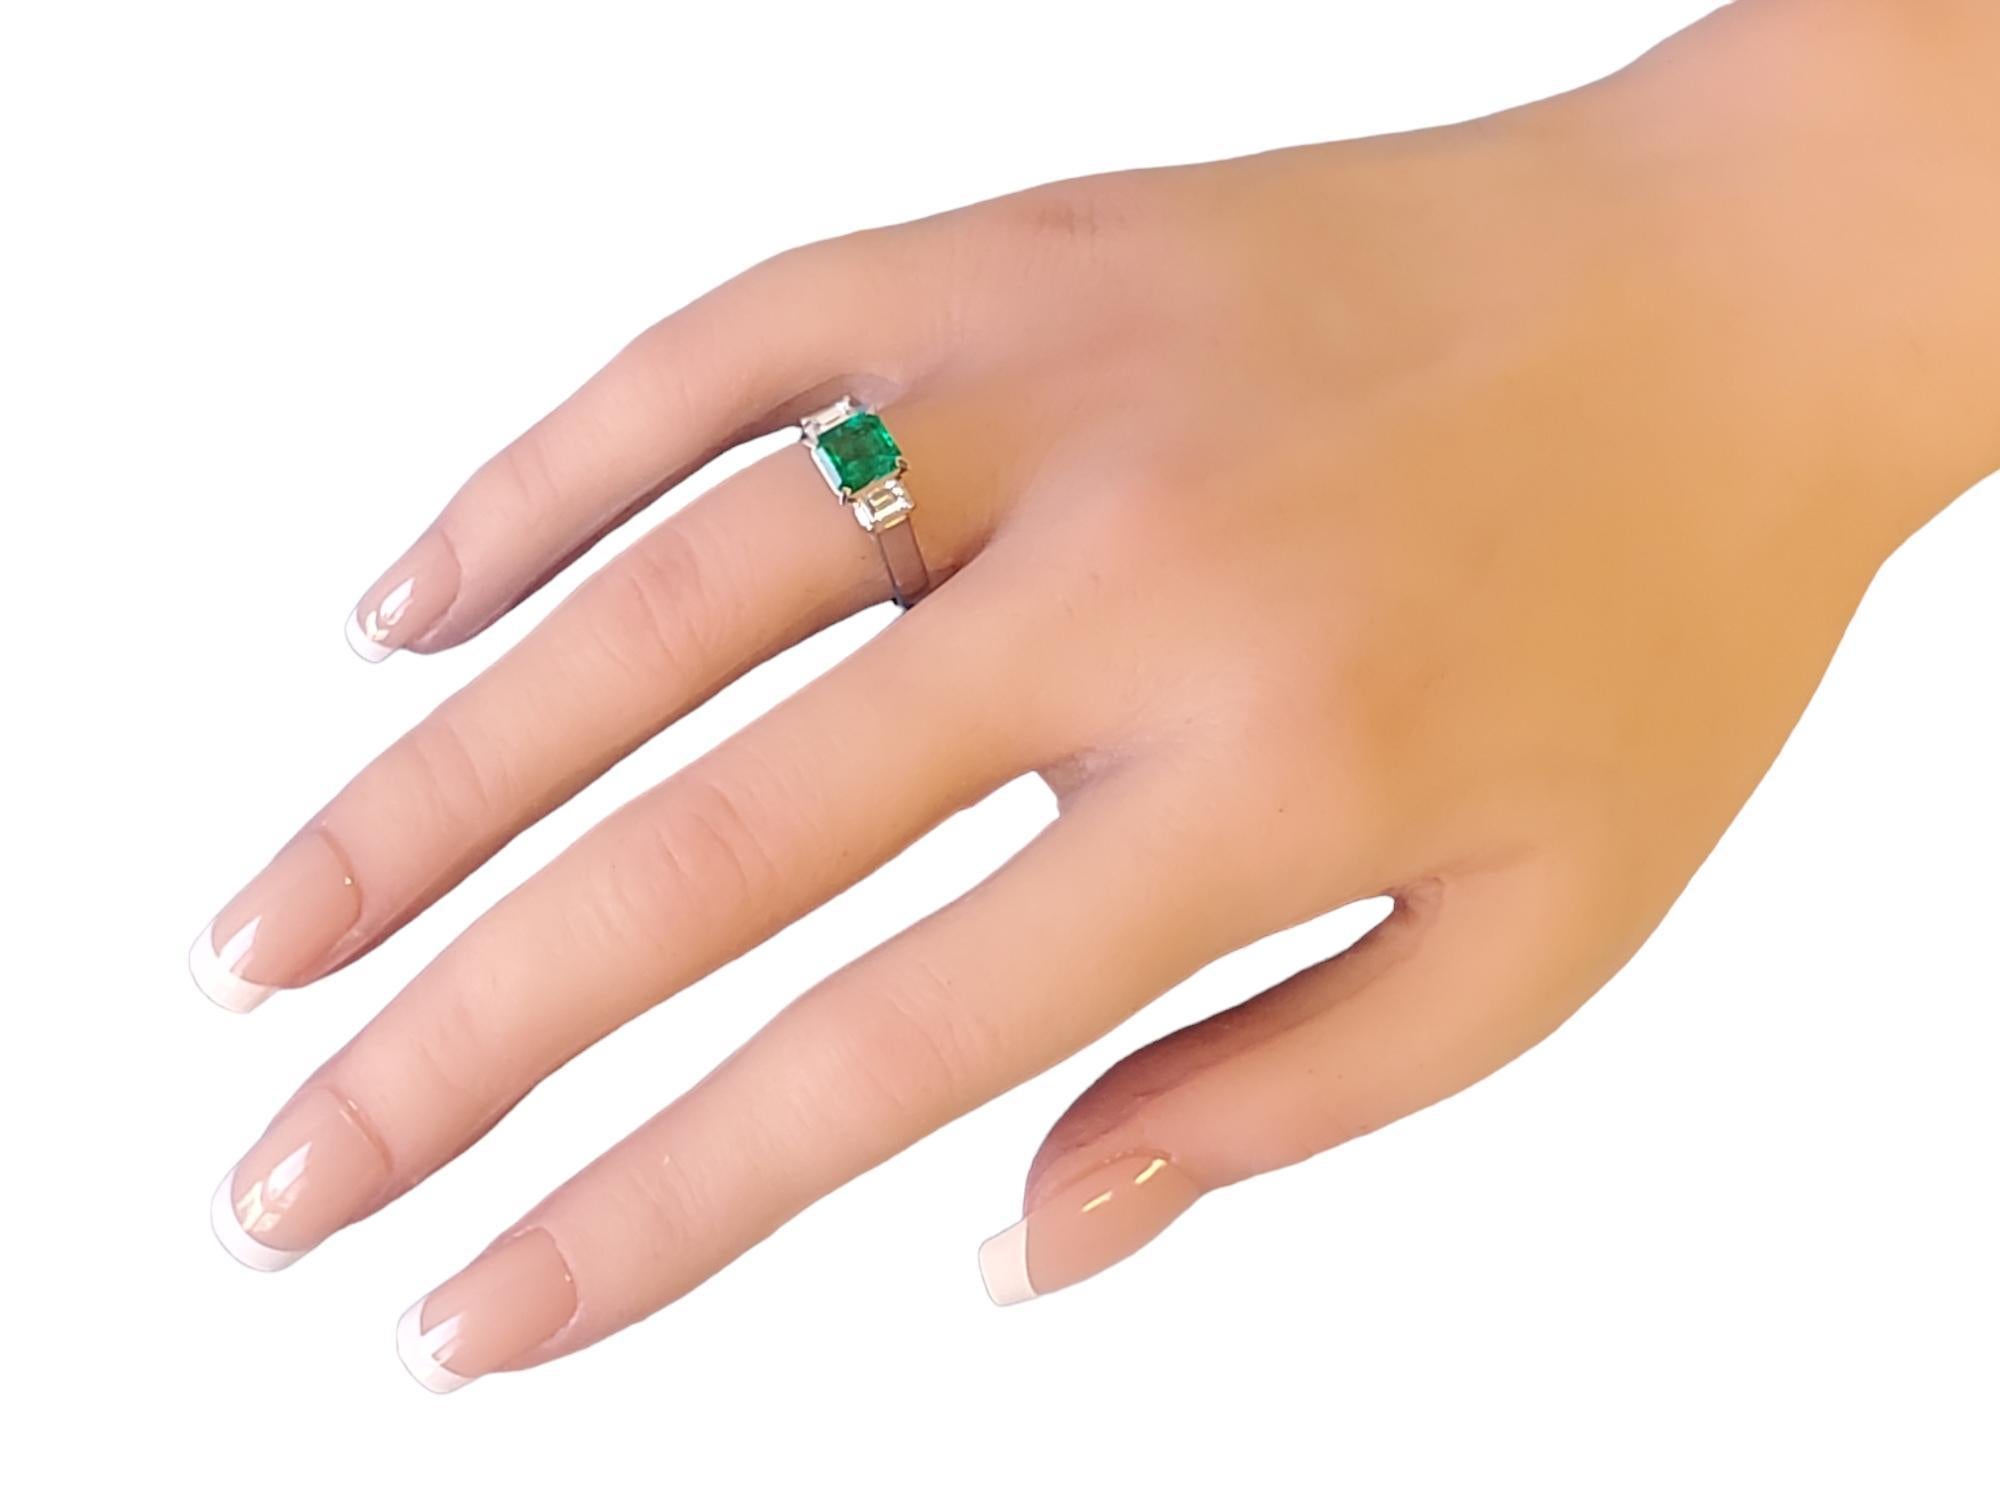 Estate Platin Ring mit einem 1,13ct kolumbianischen Smaragd Schritt geschnitten Stein flankiert mit 2 weißen Vs Diamant Baguettes .35tcw. Der Smaragd hat eine tiefe und leuchtend grüne Farbe, die typisch für kolumbianische Smaragde ist. Dieser Ring